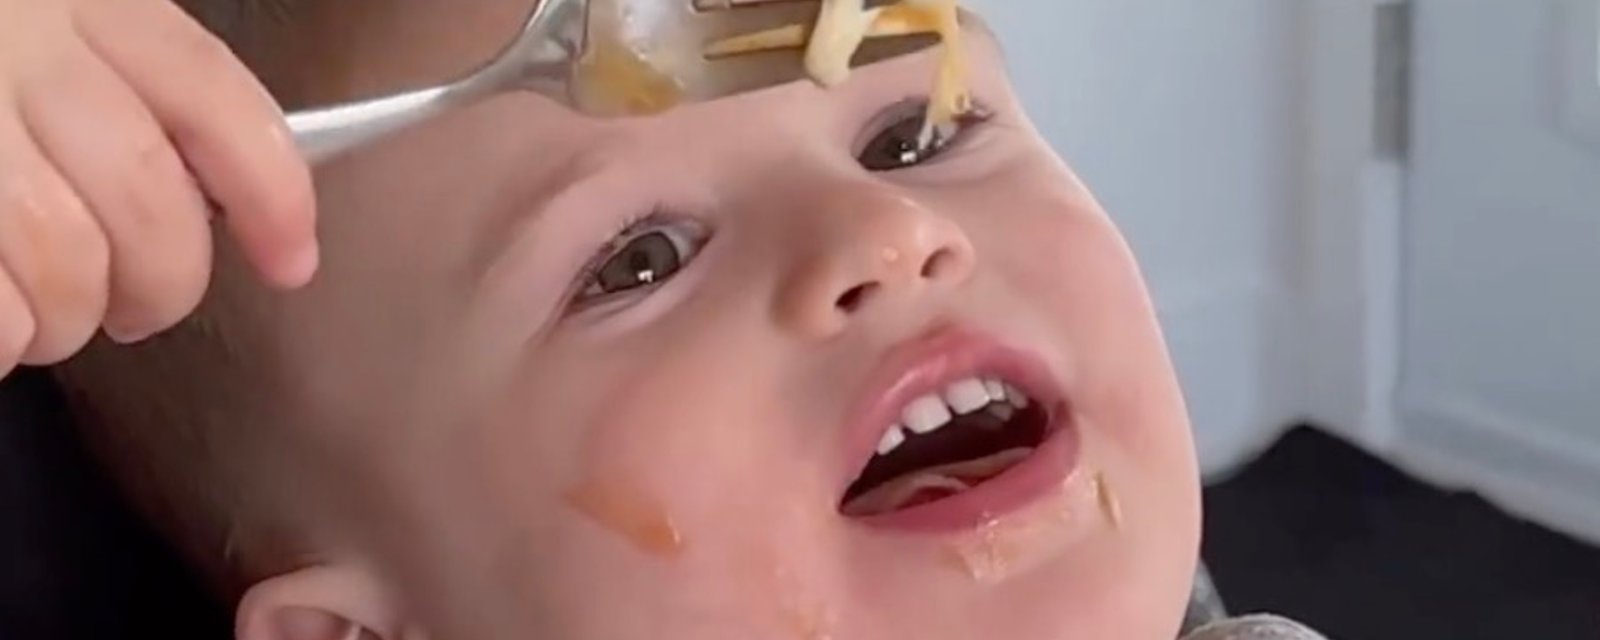 Un père filme ses enfants qui mangent une poutine pour la toute première fois et leur réaction est parfaite.